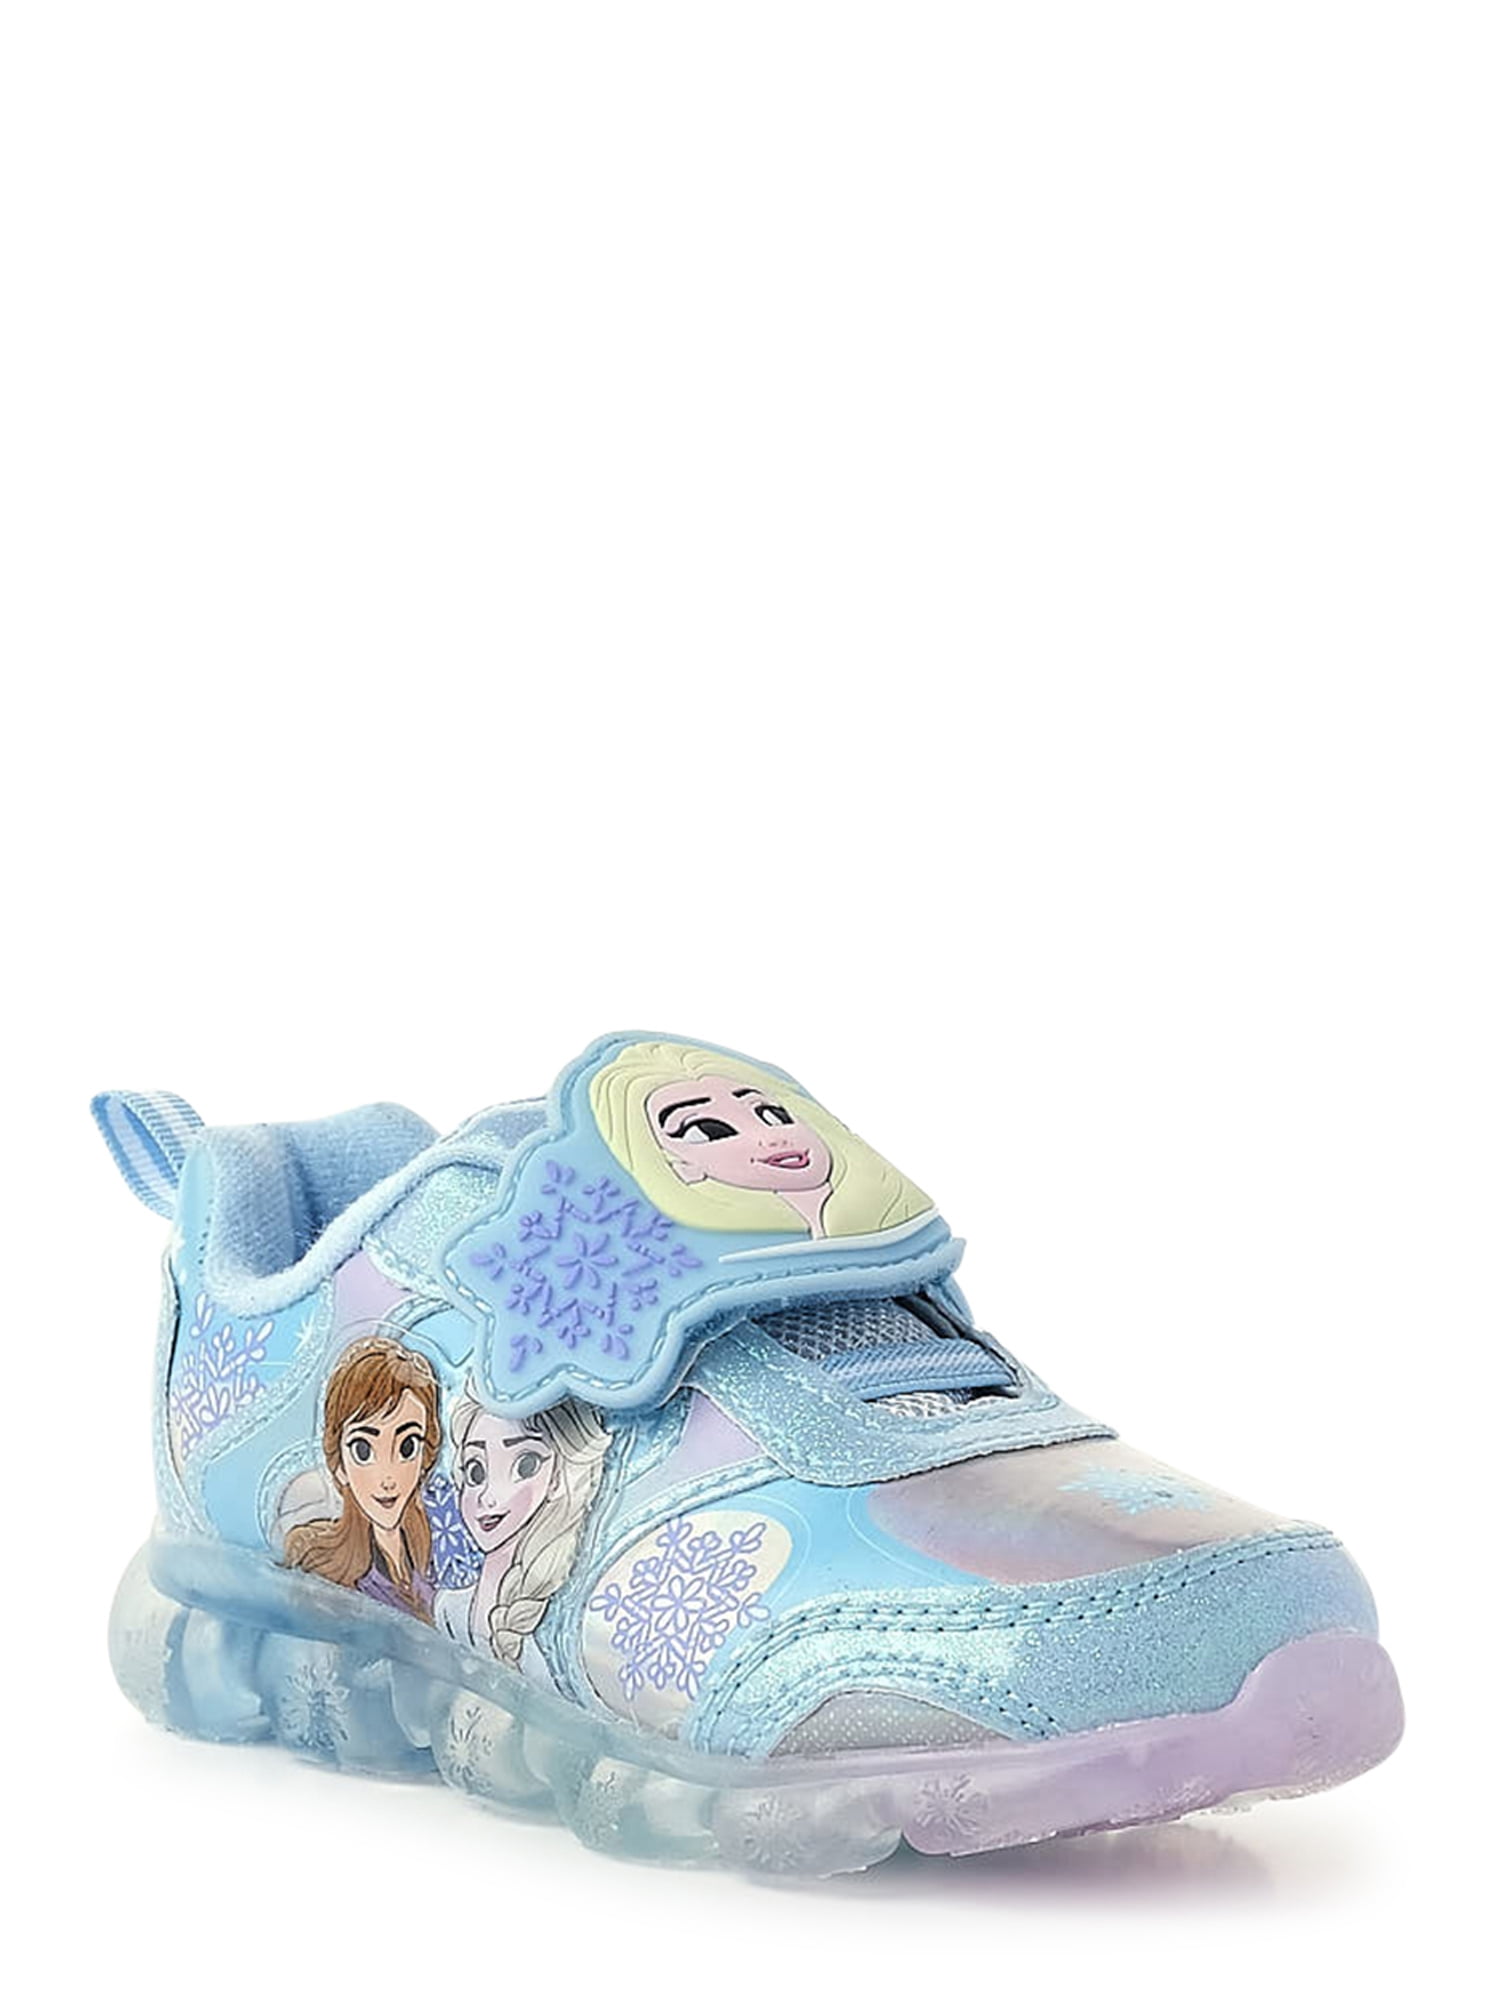 Disney Frozen Toddler Girl Athletic Light Up Sneaker, Sizes 7-12